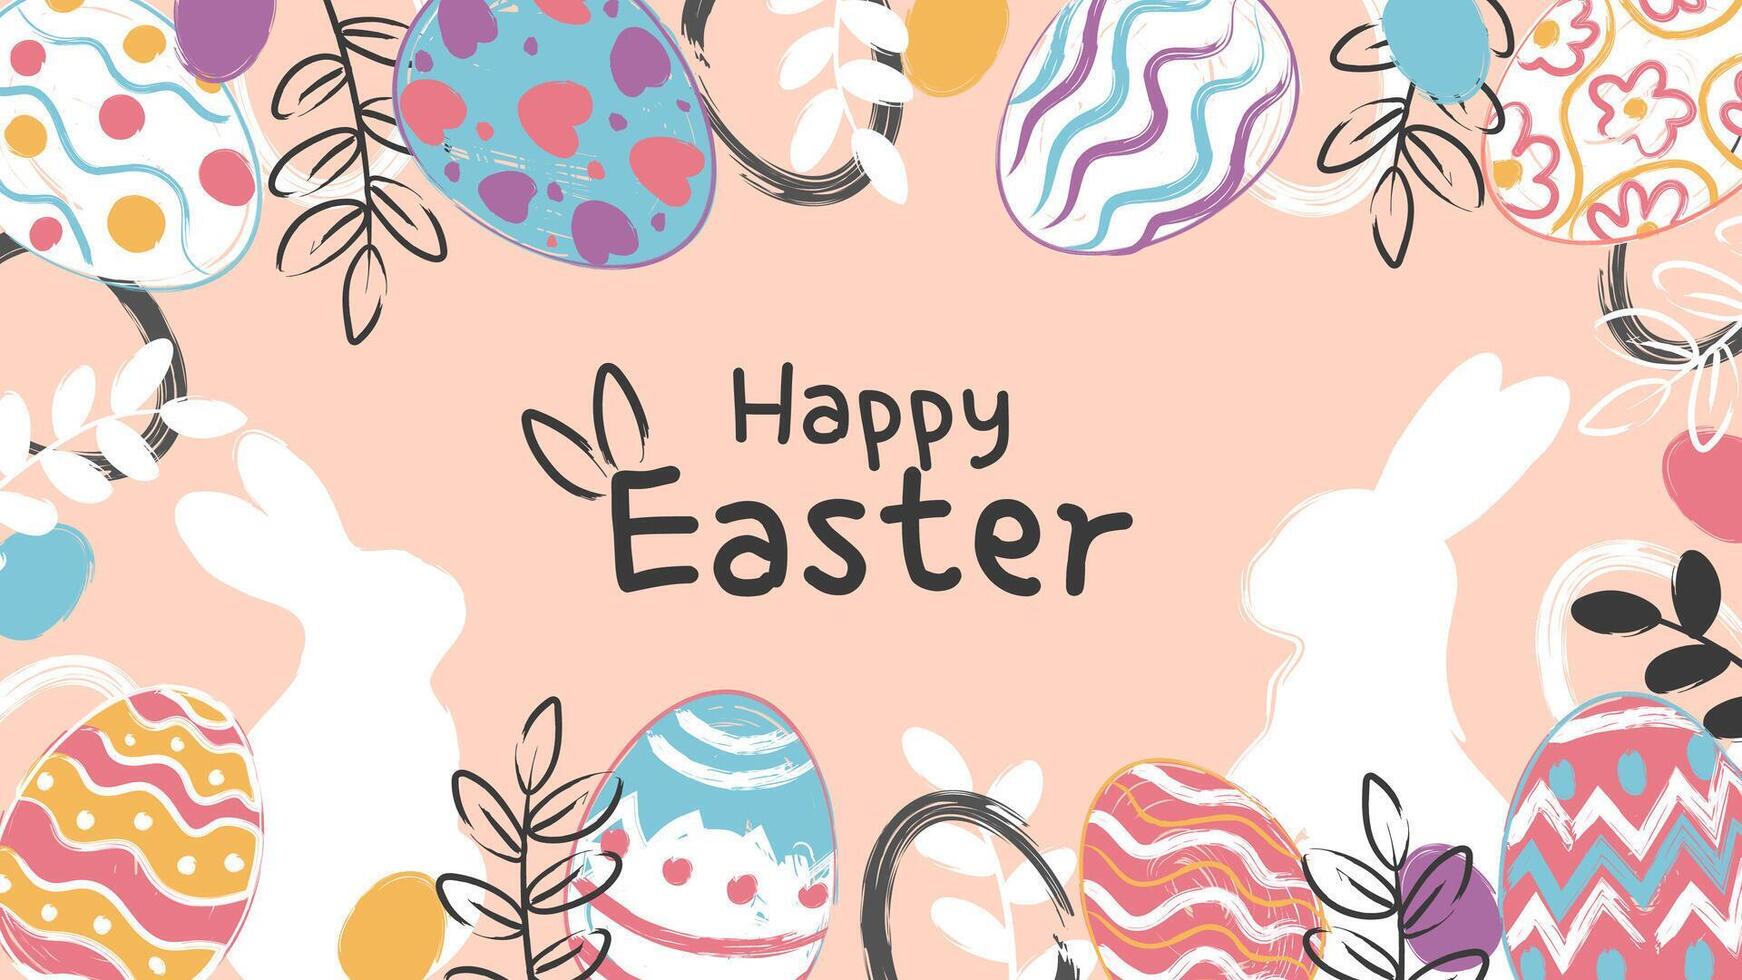 contento Pascua de Resurrección bandera, póster, saludo tarjeta. de moda Pascua de Resurrección diseño con tipografía, conejitos, flores, huevos, en pastel colores. acuarela estilo vector